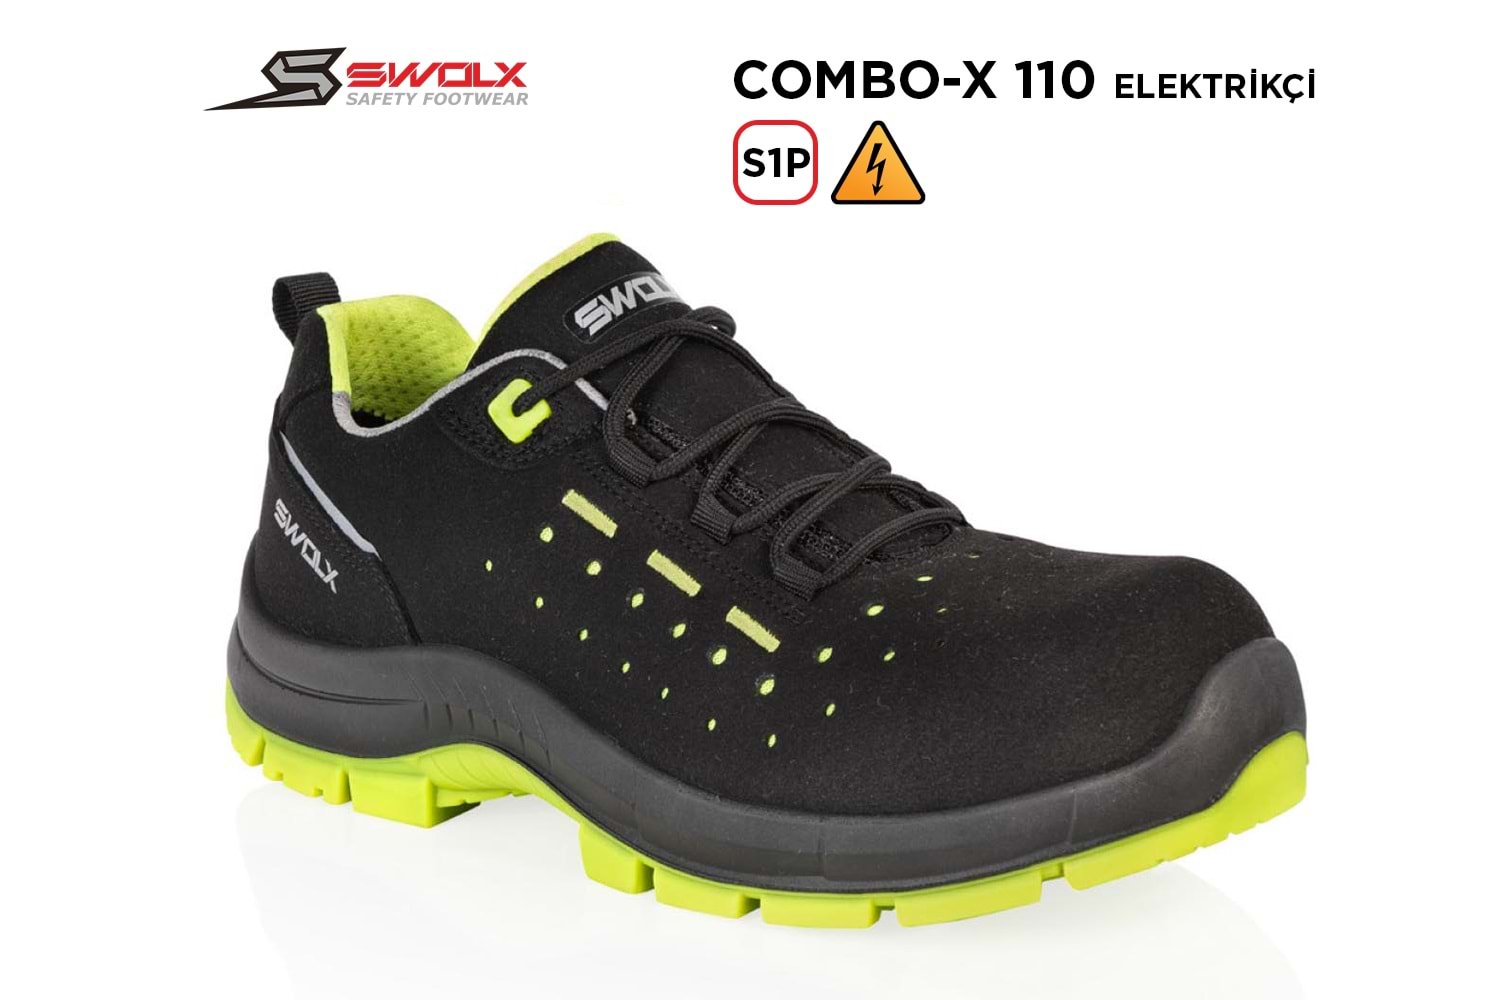 Swolx İş Ayakkabısı - Combo-X 110 S1P Elektrikçi - 41